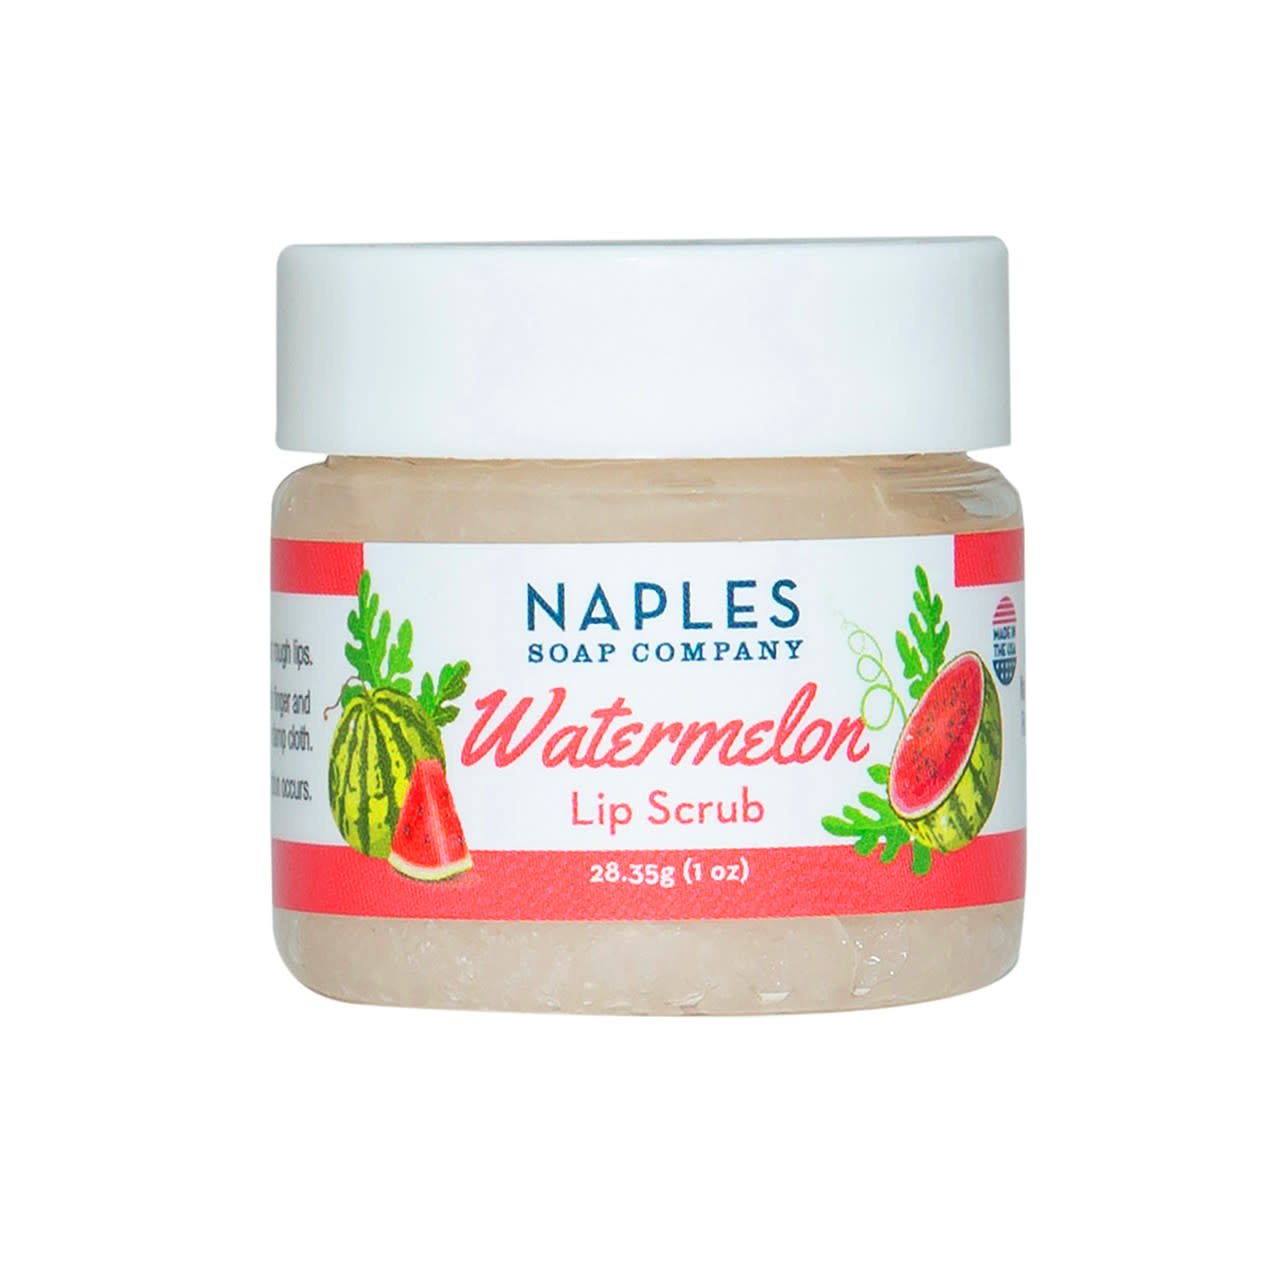 Naples Soap Co. Watermelon Lip Scrub